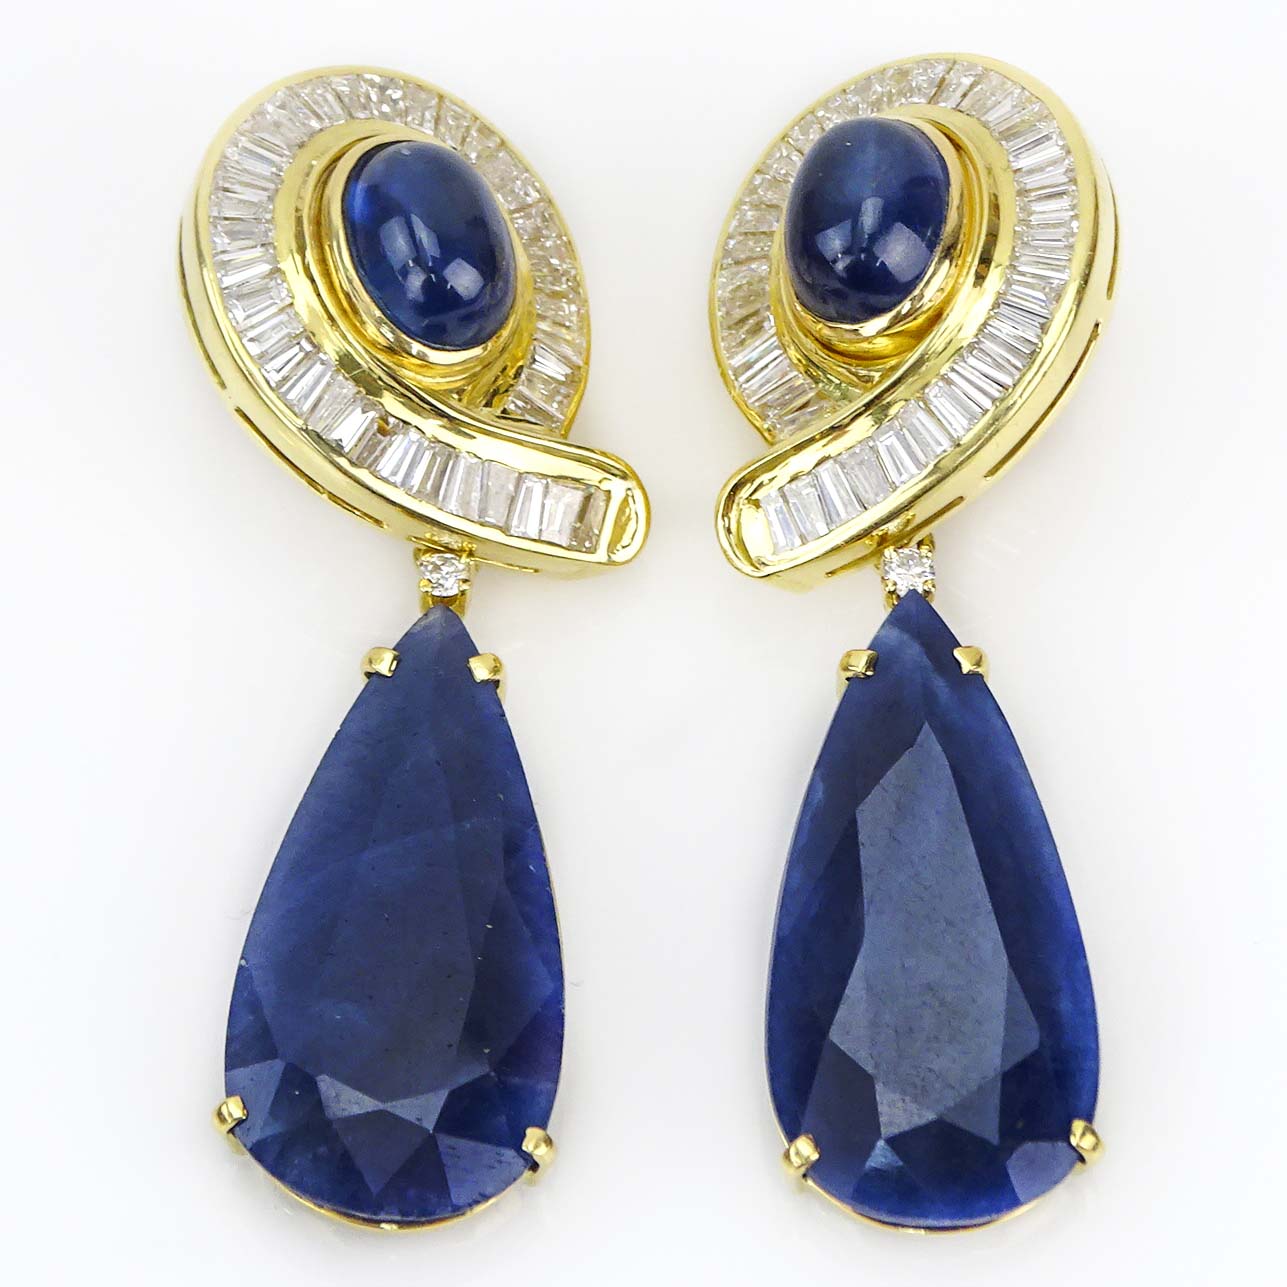 Vintage Large Pear Shape Sapphire, Cabochon Star Sapphire, Baguette Cut Diamond and 18 Karat Yellow Gold Detachable Pendant Earrings.